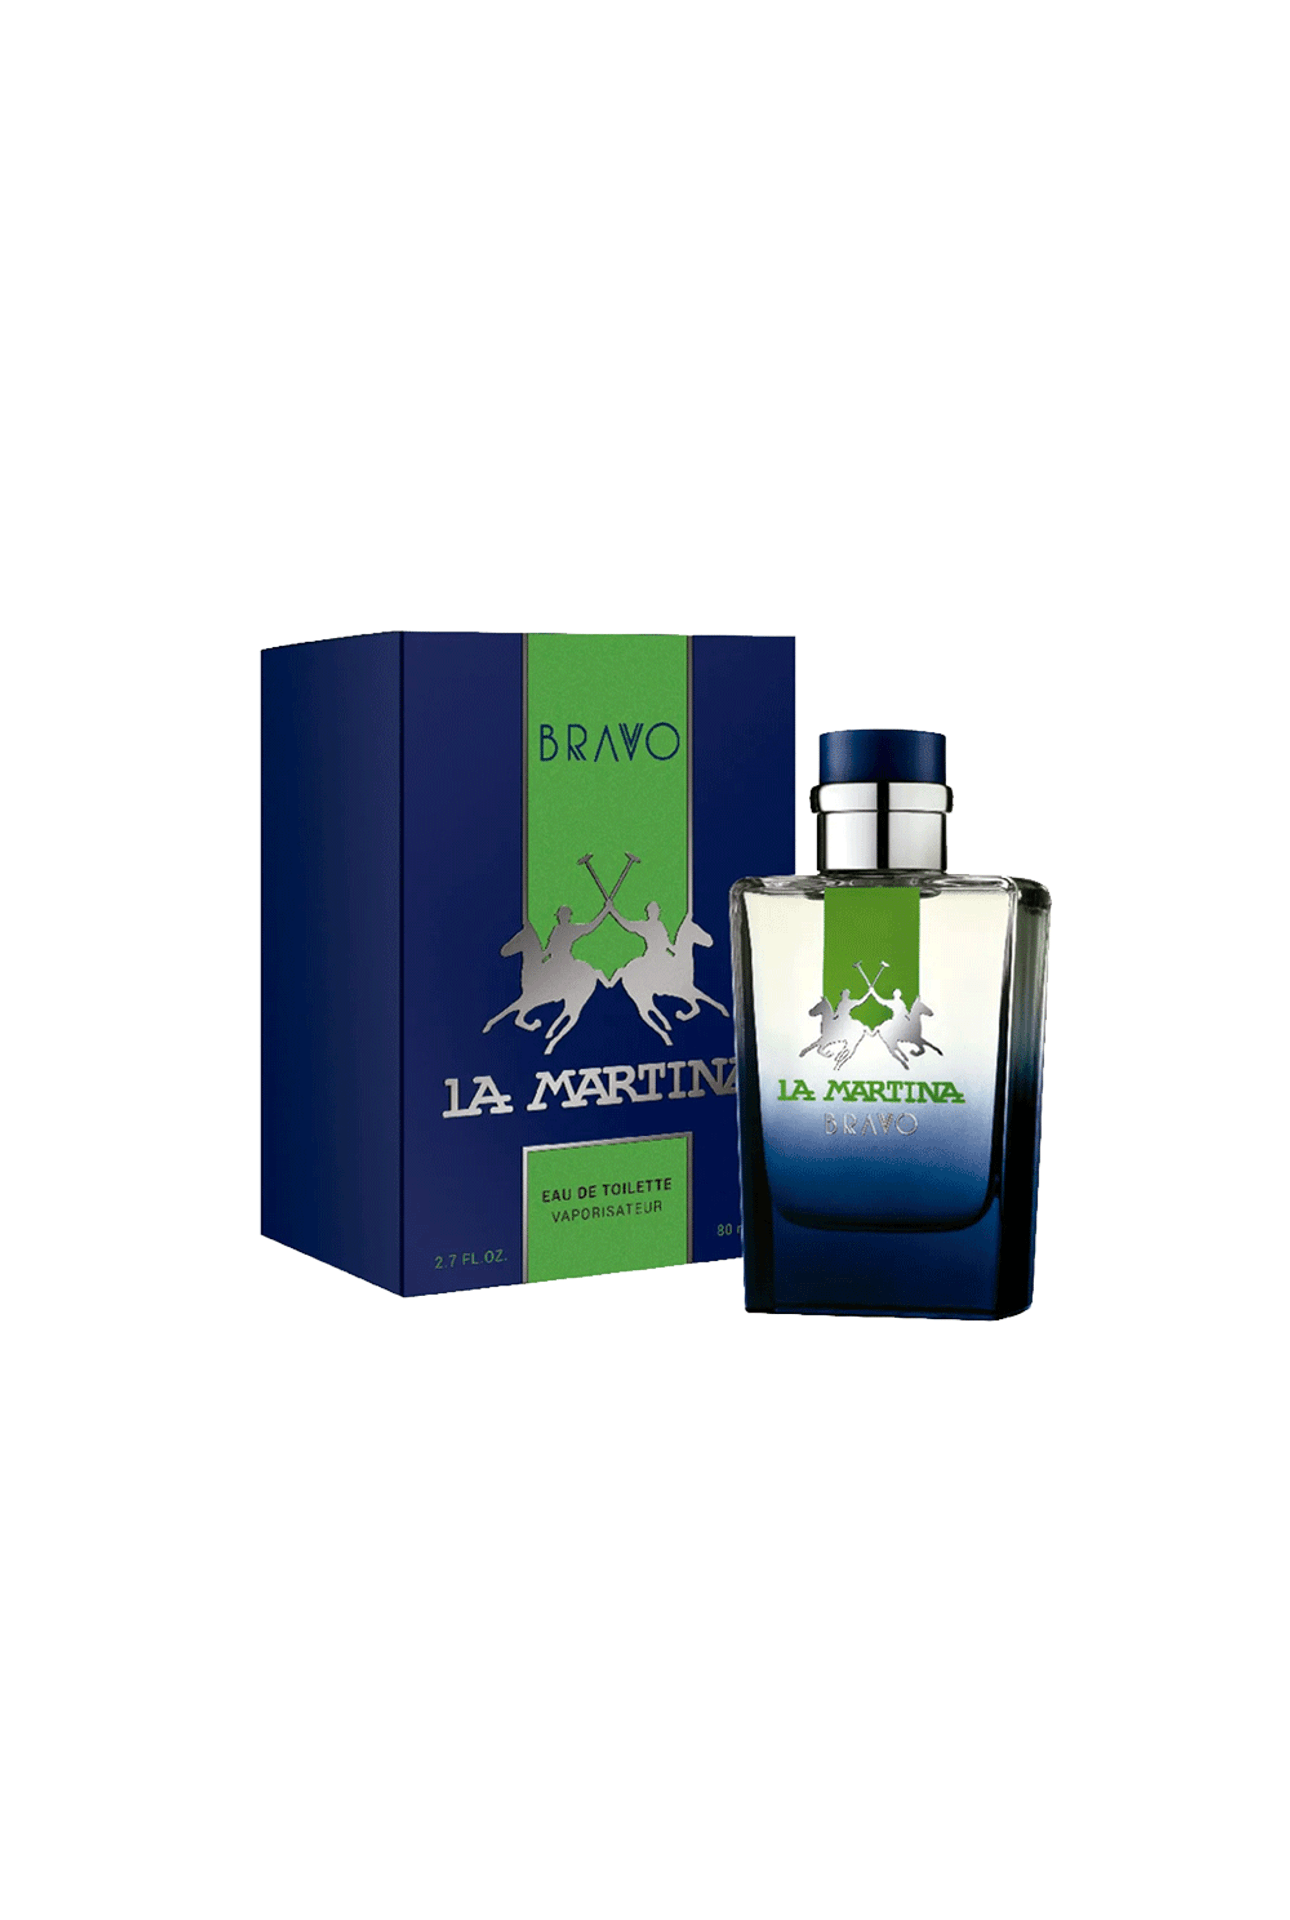 La-Dolfina-Perfume-La-Martina-Bravo-Edt-x-80-ml-7791600778026_img1